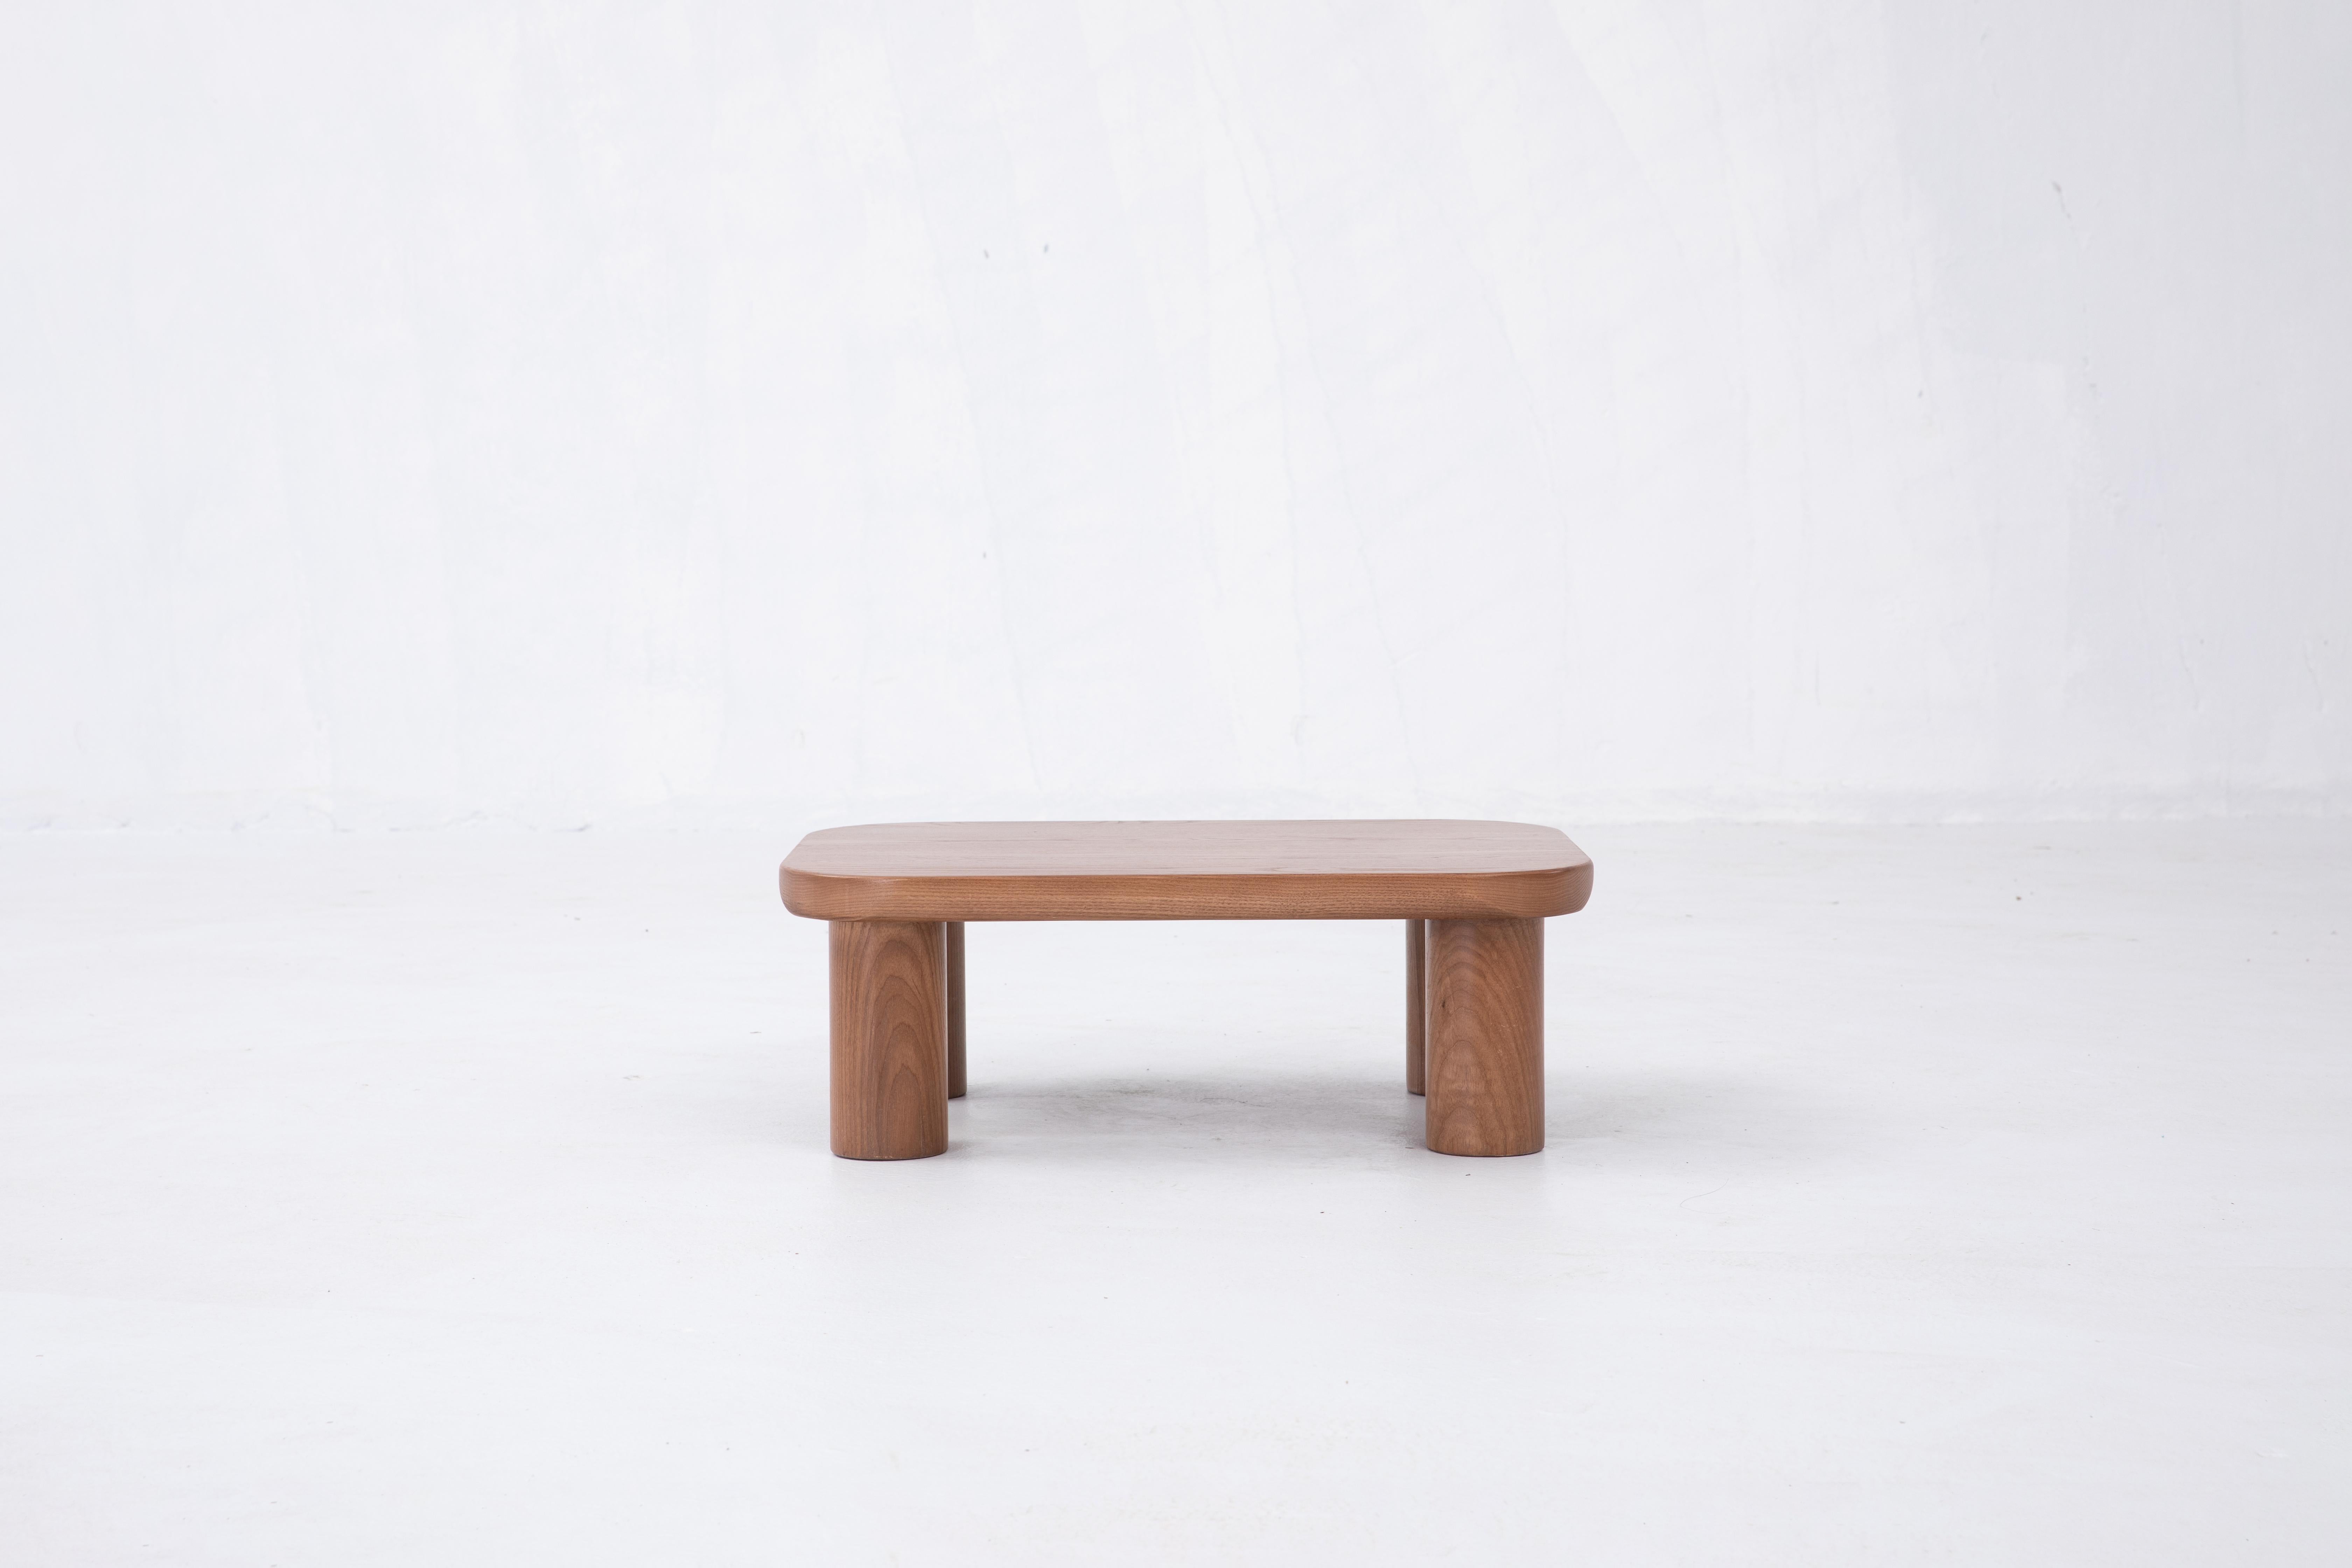 Sun at six est un studio de conception de meubles contemporains qui travaille avec des maîtres menuisiers chinois traditionnels pour fabriquer ses pièces à la main en utilisant la menuiserie traditionnelle. 

Un bon meuble commence par des matériaux